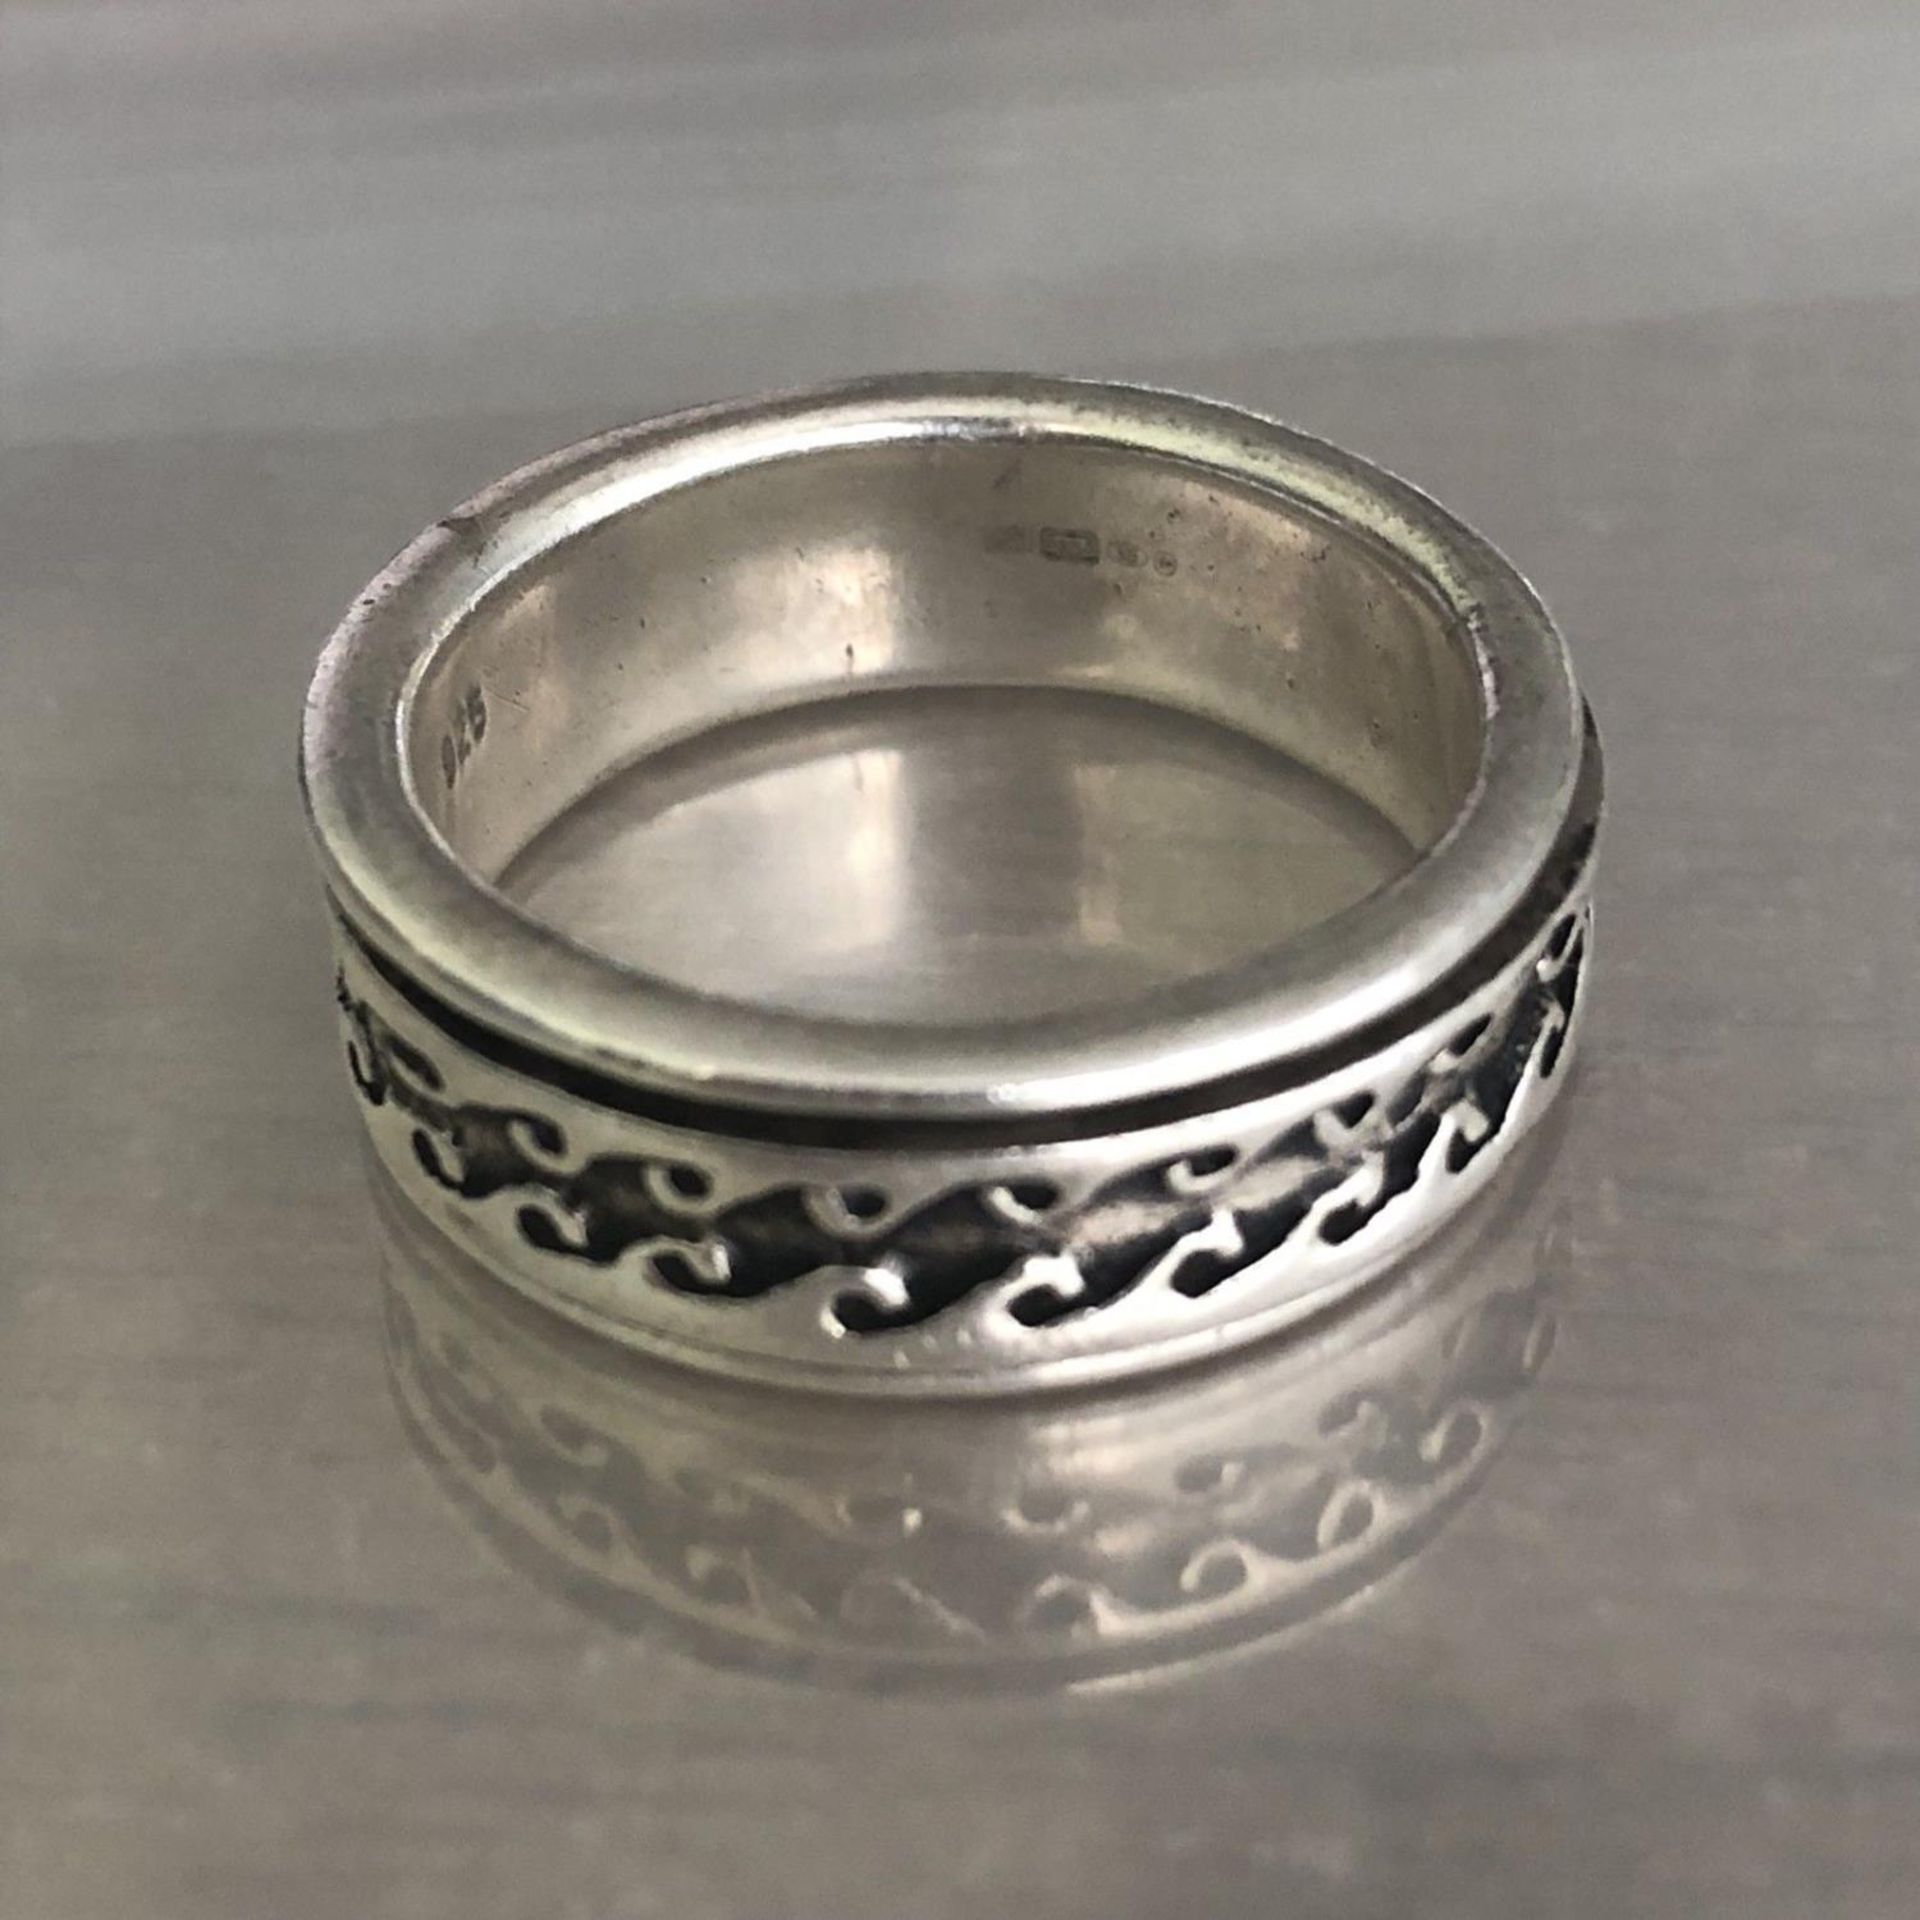 Mens Hallmarked Silver Spinning Fidget Ring - Size V - Birmingham Hallmarks